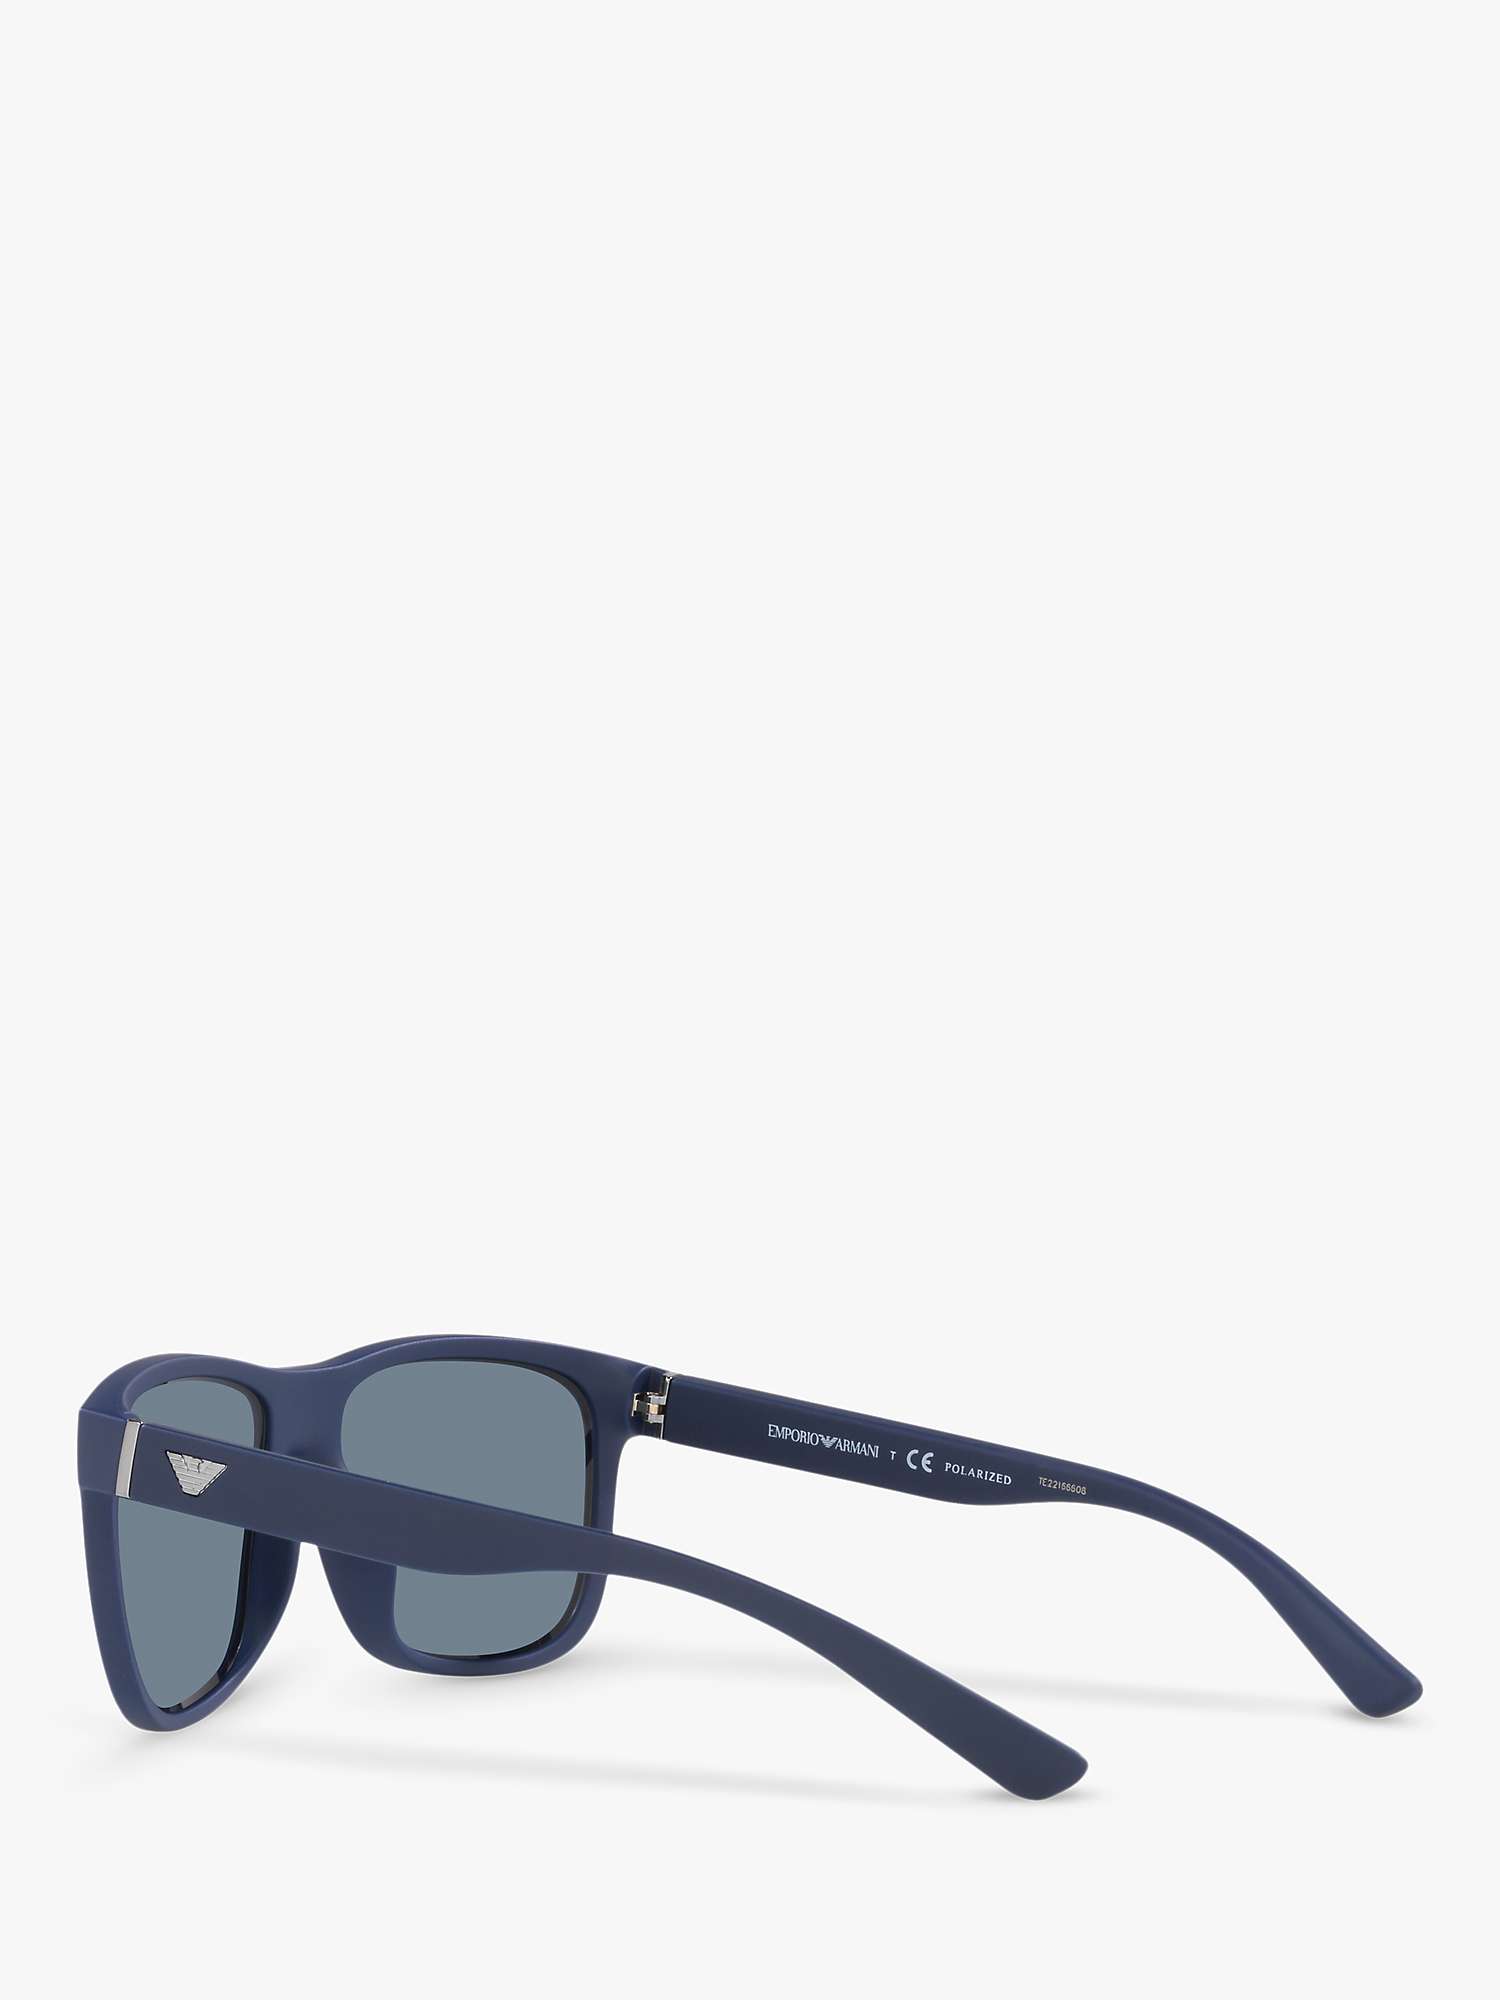 Buy Emporio Armani EA4182U Men's Polarised Square Sunglasses, Matte Blue/Blue Online at johnlewis.com